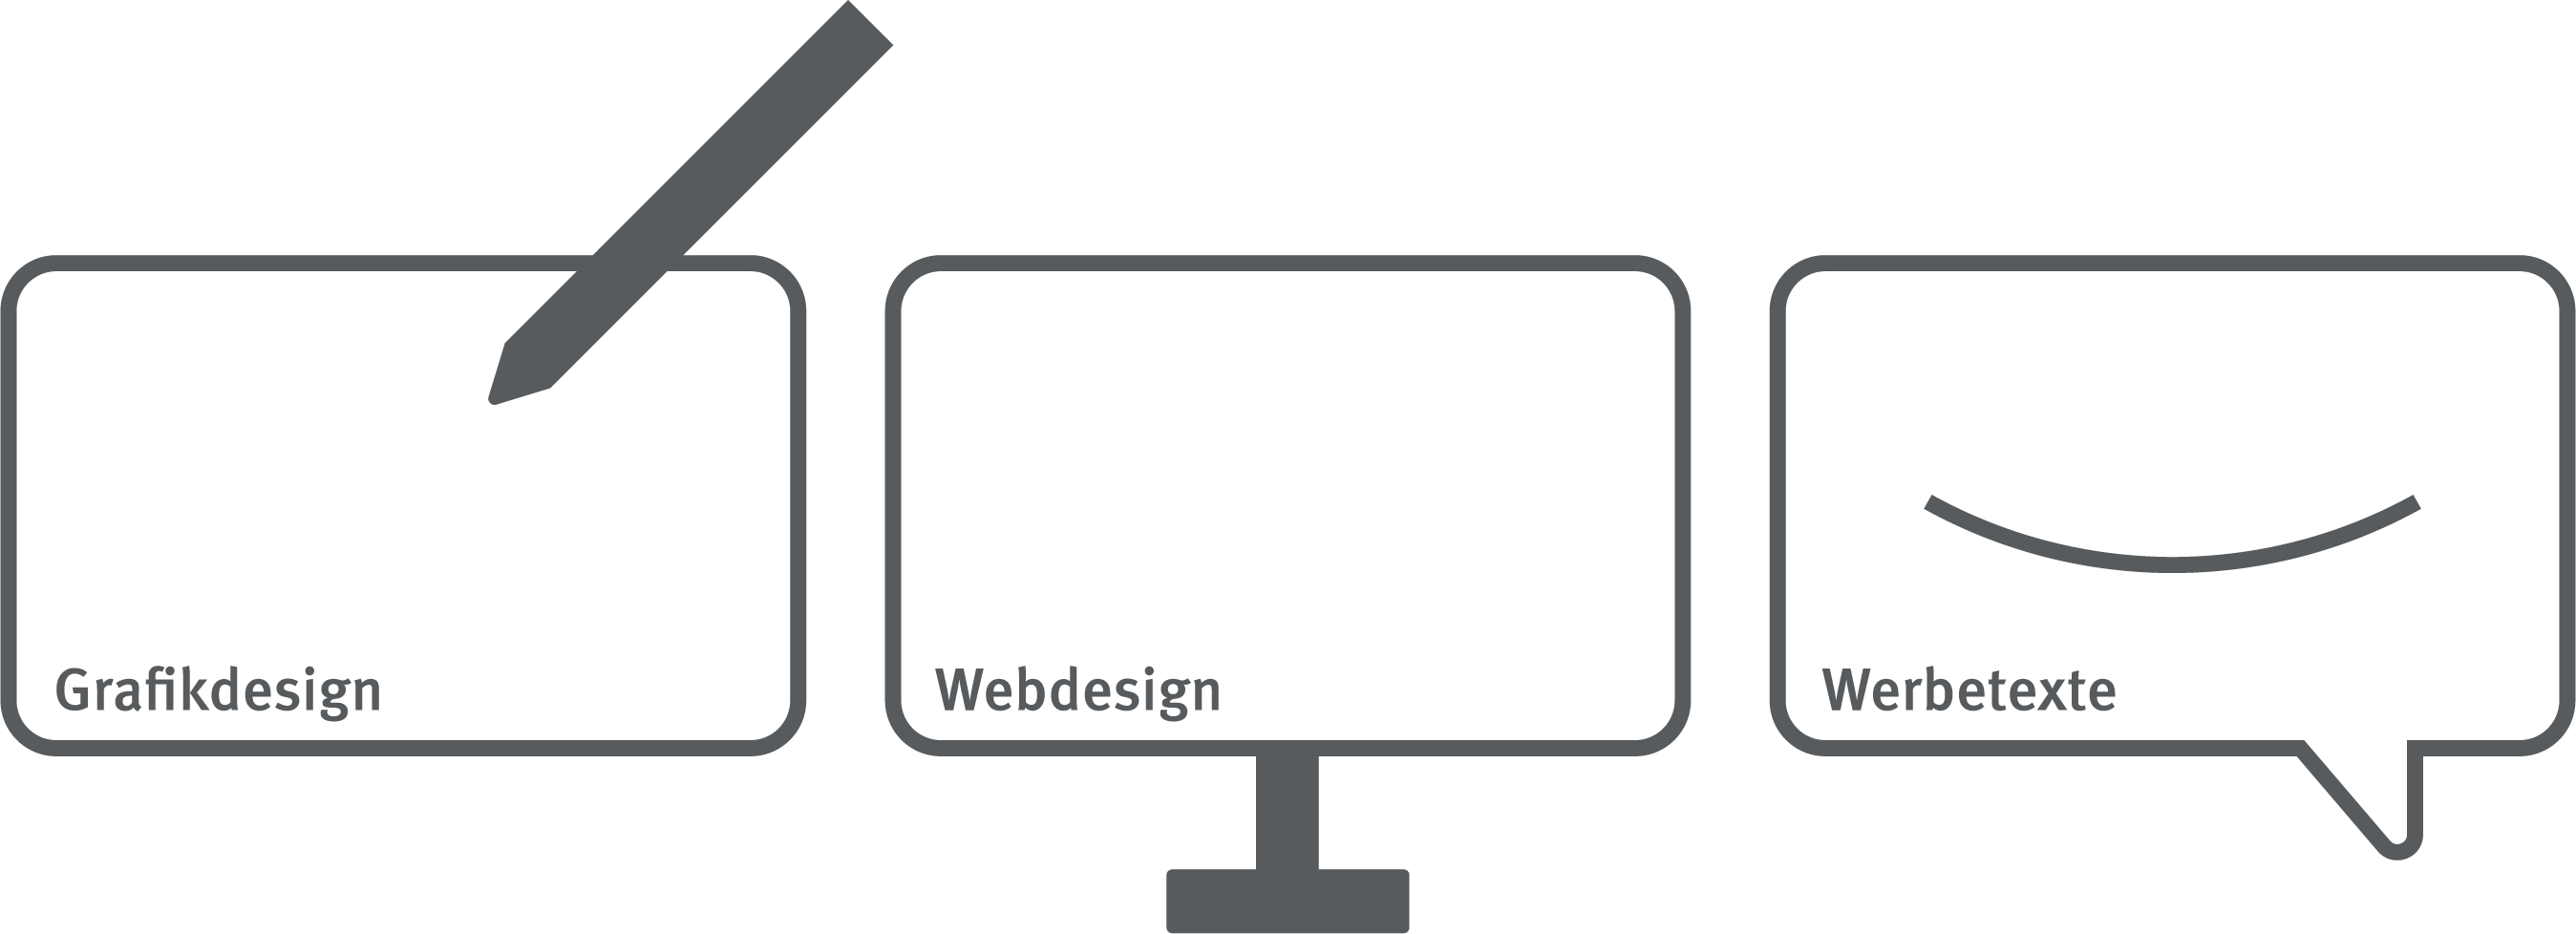 Icons Grafikdesign, Webdesign, Werbetexte